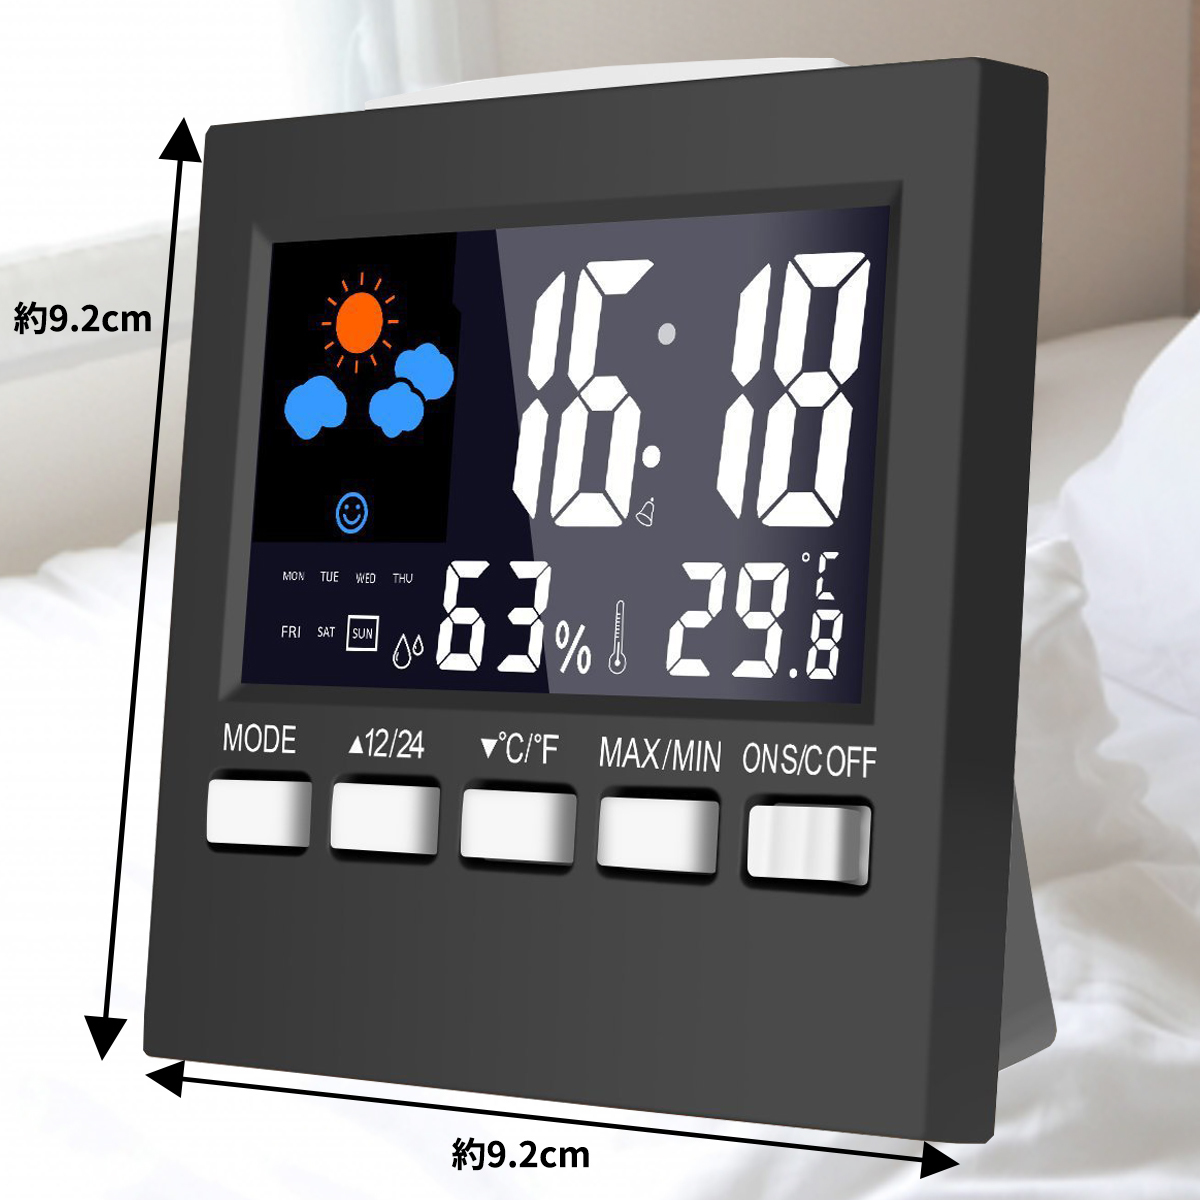 置き時計 デジタル温湿度計 目覚まし時計 時計 温度 体感表示 大画面 多機能 乾燥対策 健康管理 人感センサー 寝室用 コンパクト_画像3